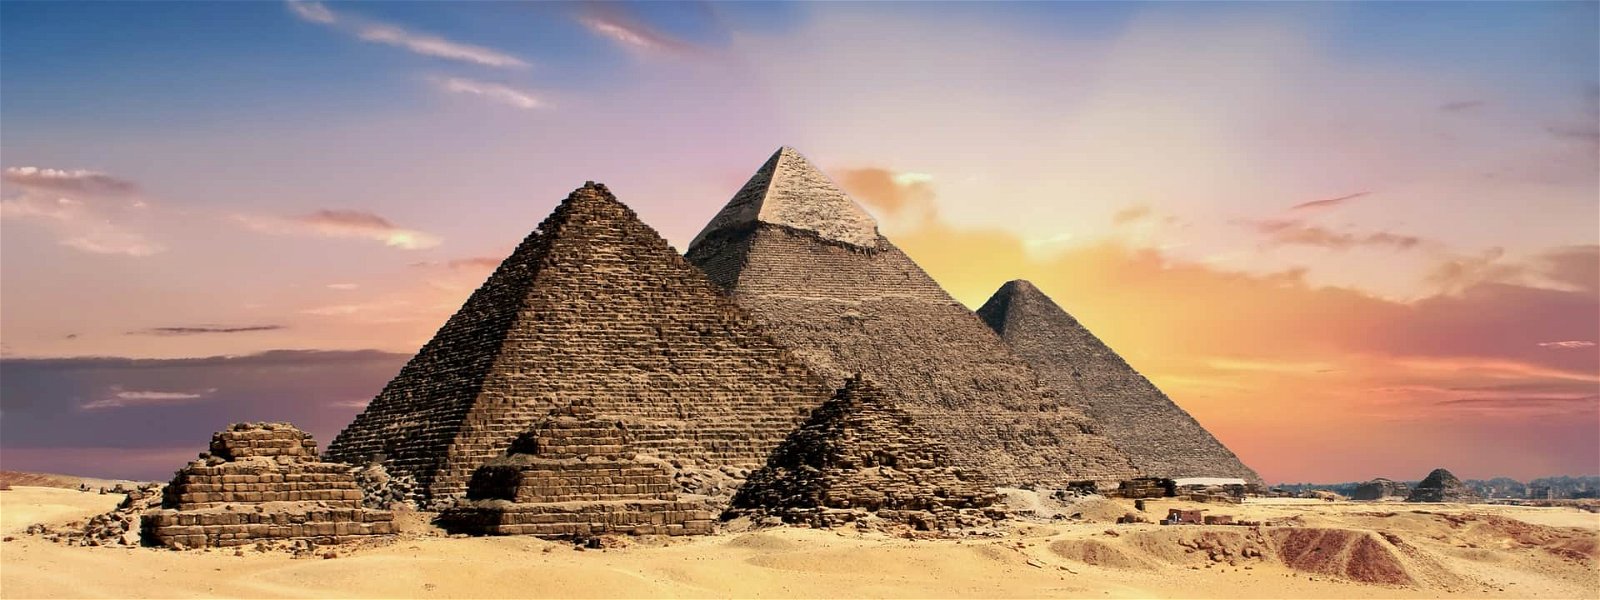 History of salt in egypt